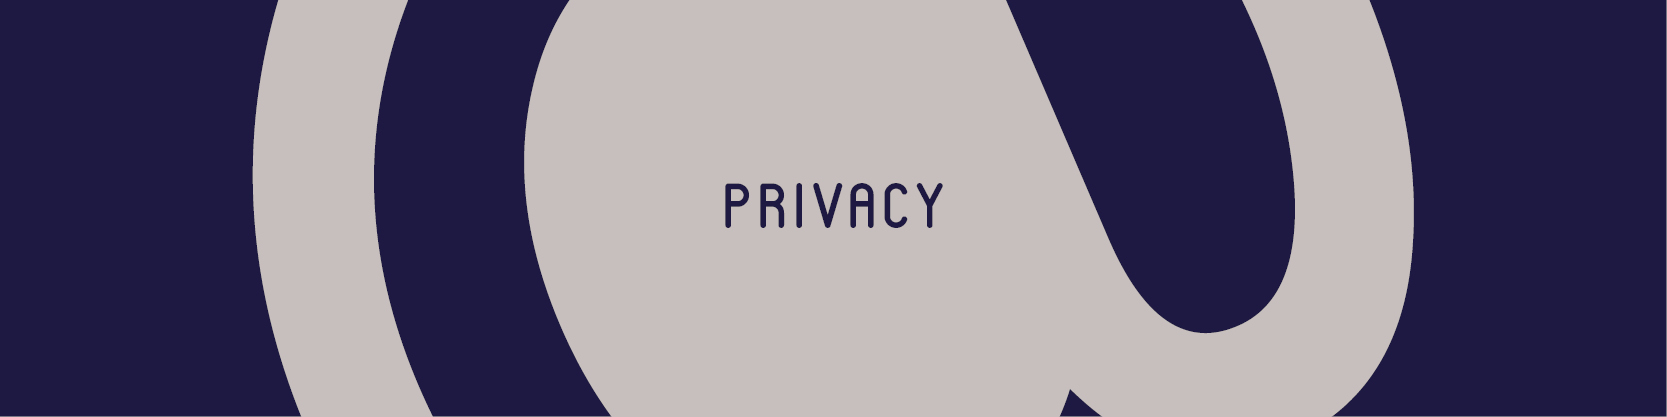 Privacy - Allera Marketing